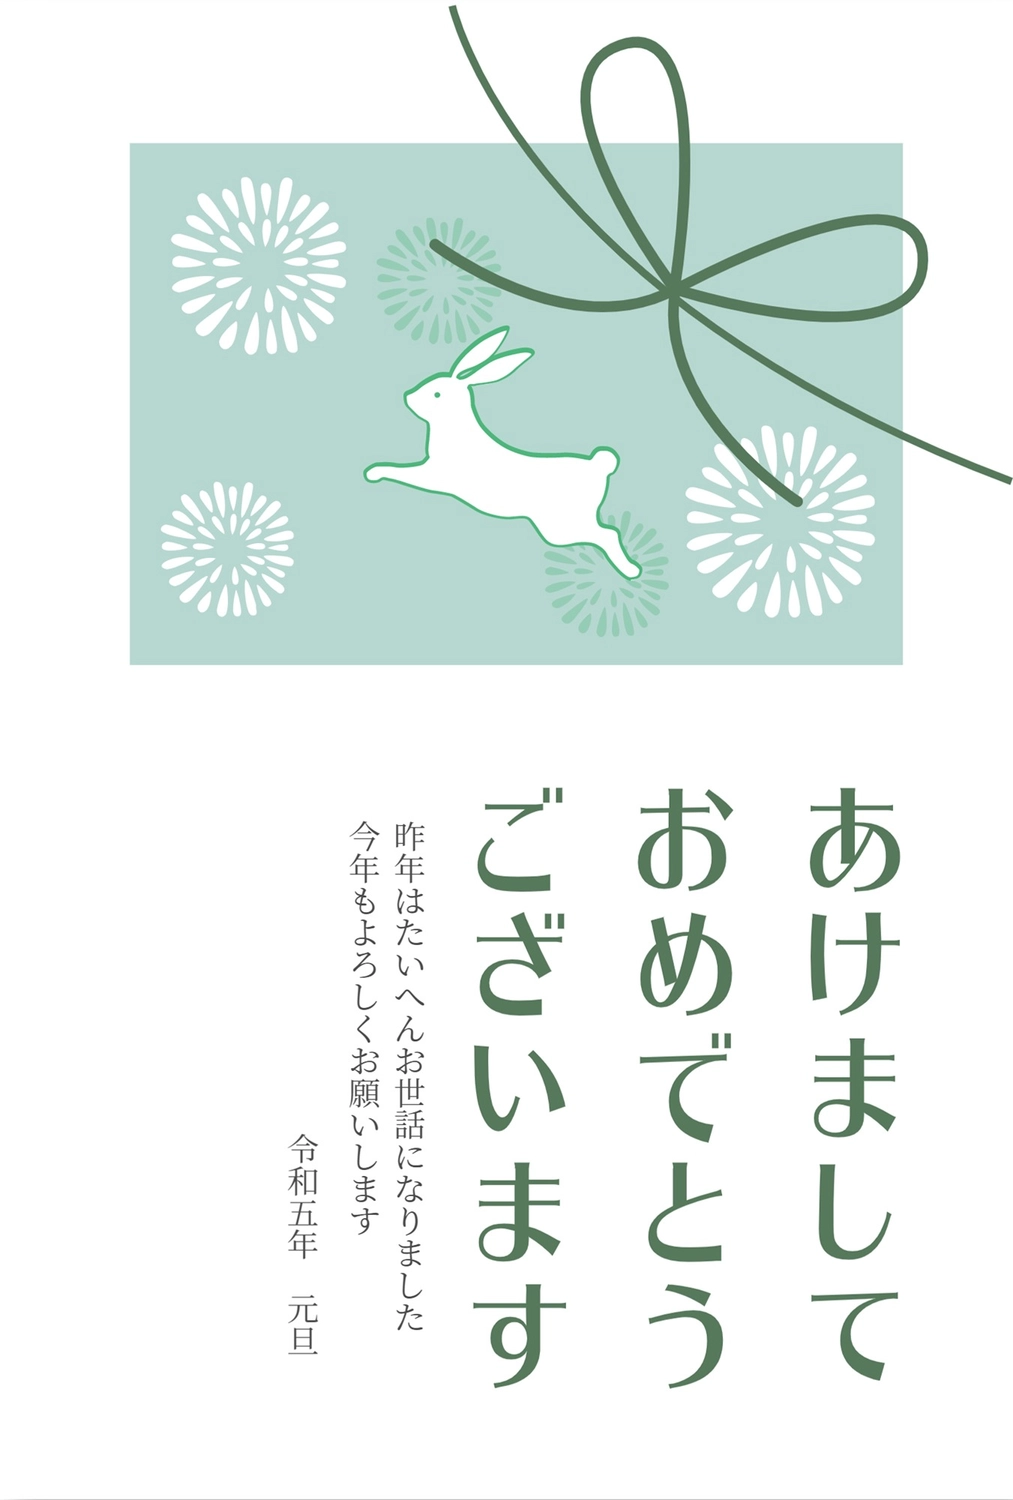 緑の水引きとうさぎの年賀状, 연하장, 令和, 흰 토끼, 새해 카드 템플릿